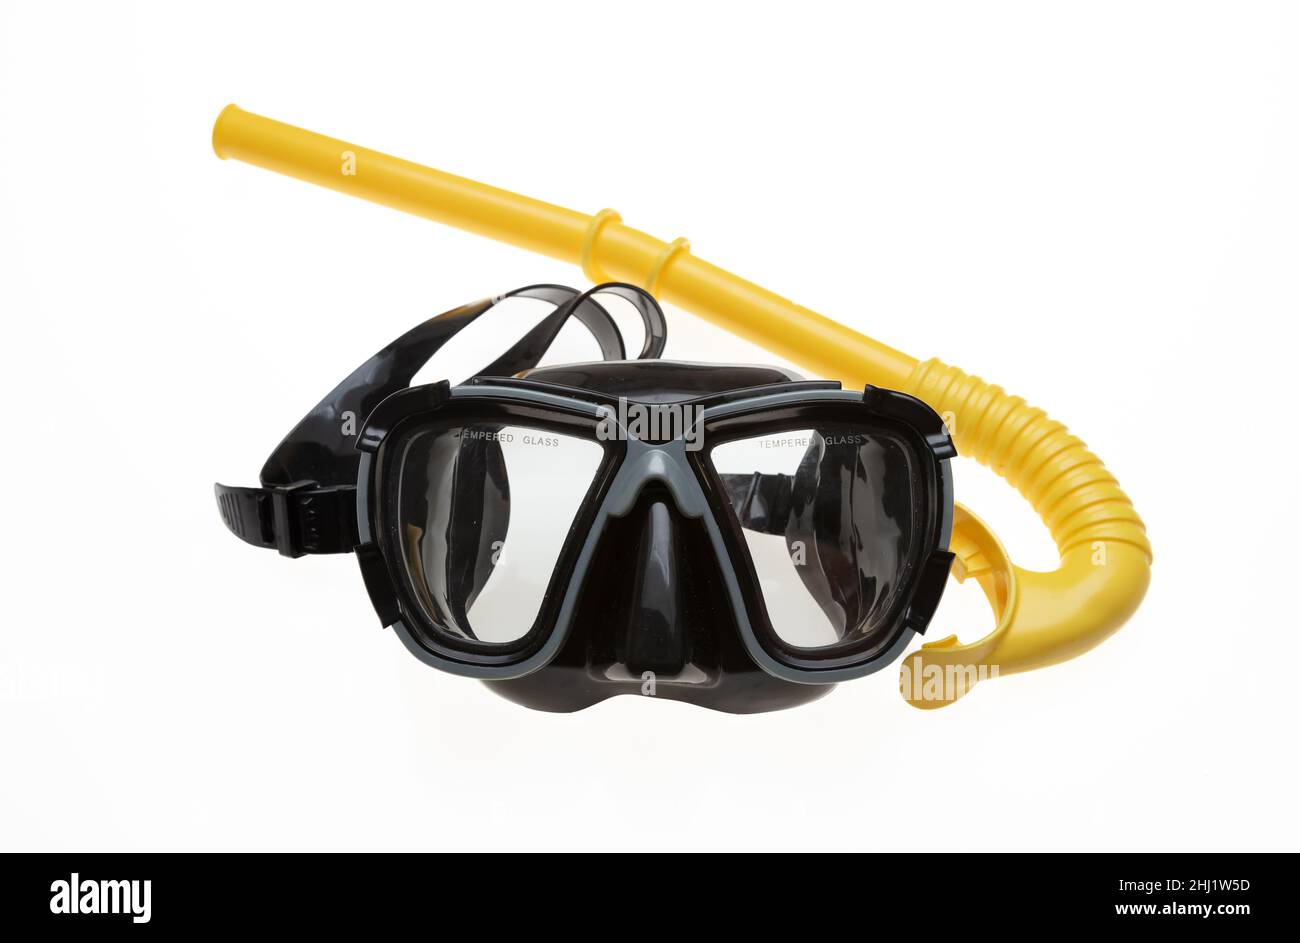 Maschera subacquea e boccaglio giallo isolato su sfondo bianco. Maschera subacquea nera con acqua in vetro temperato e attrezzatura subacquea. Sport, attività, Foto Stock